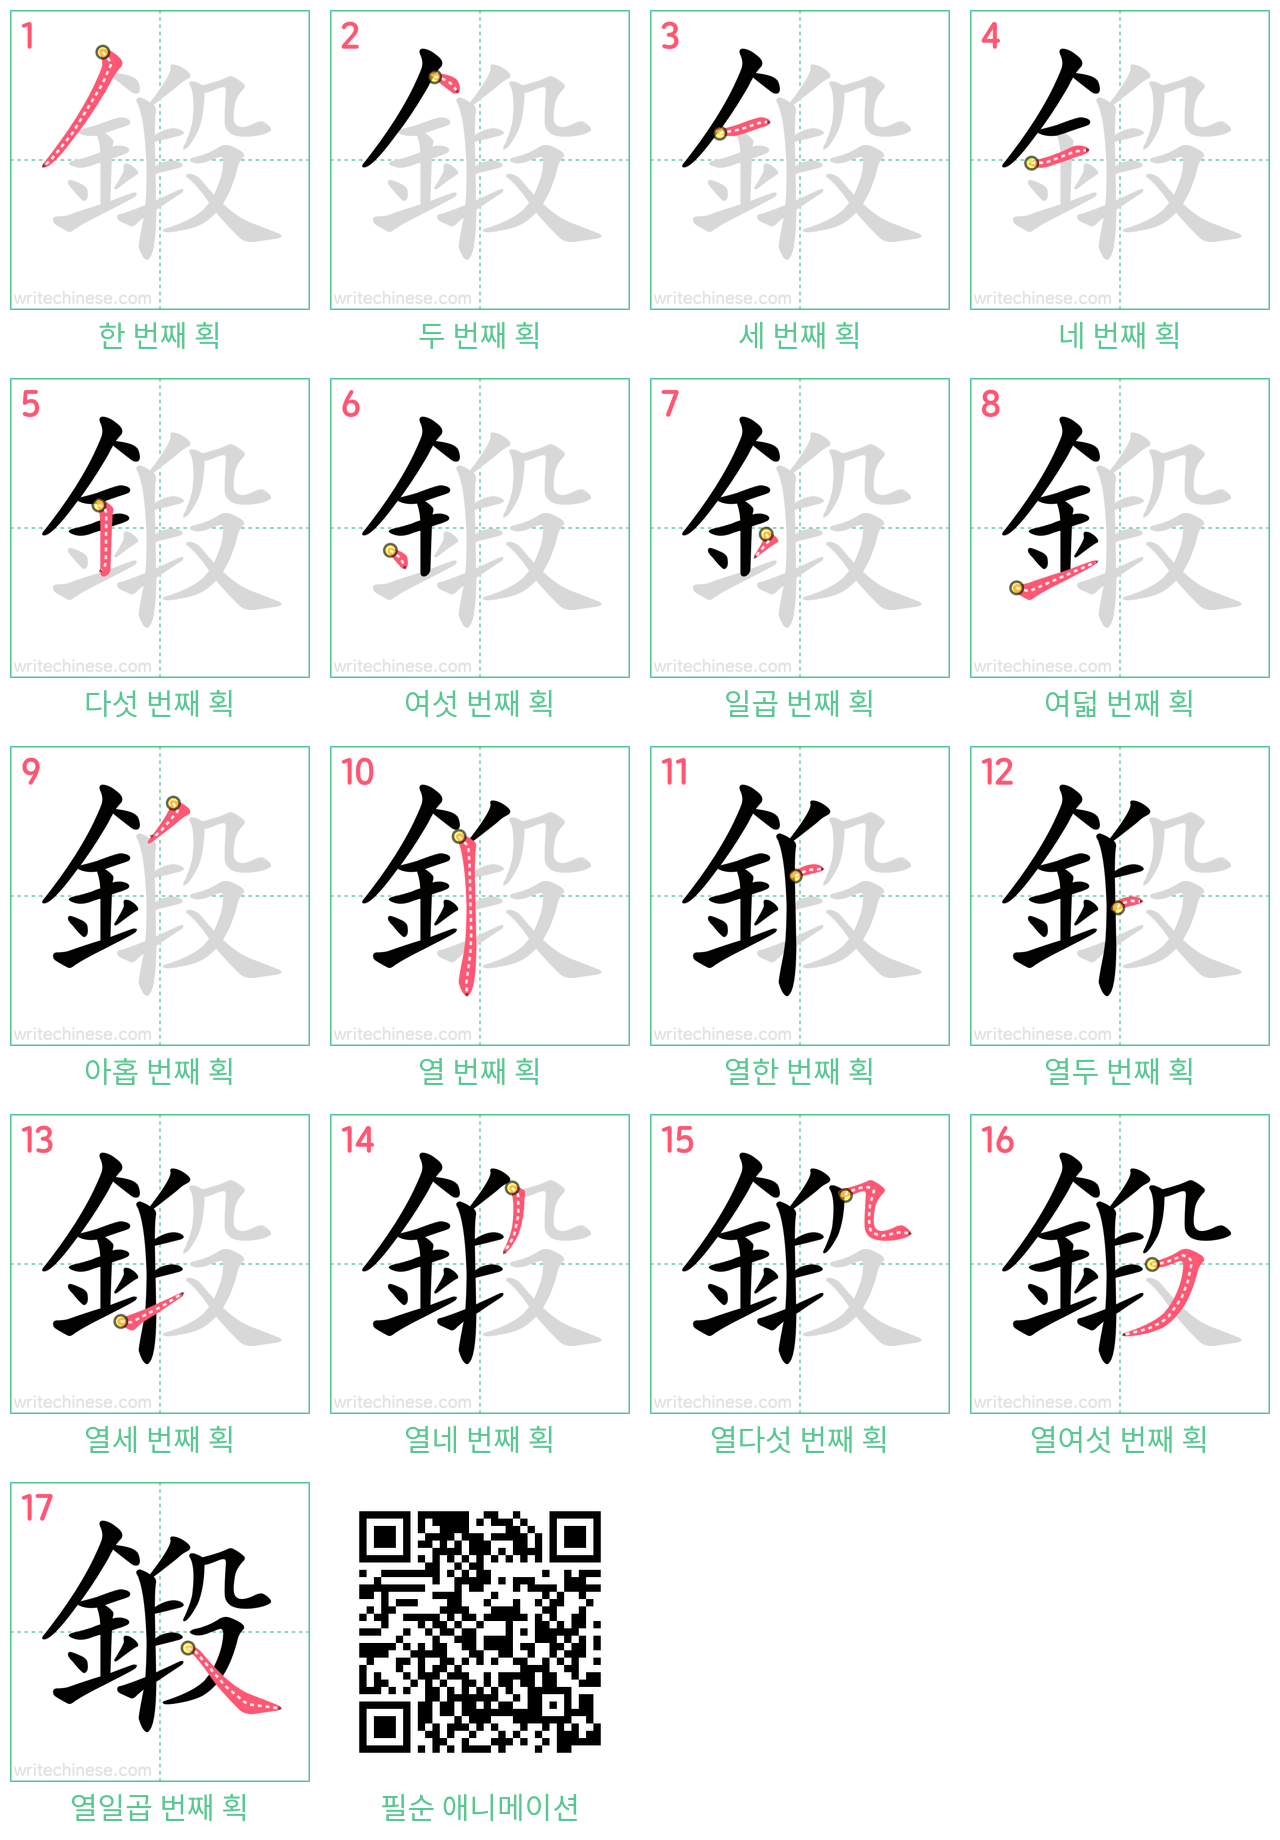 鍛 step-by-step stroke order diagrams